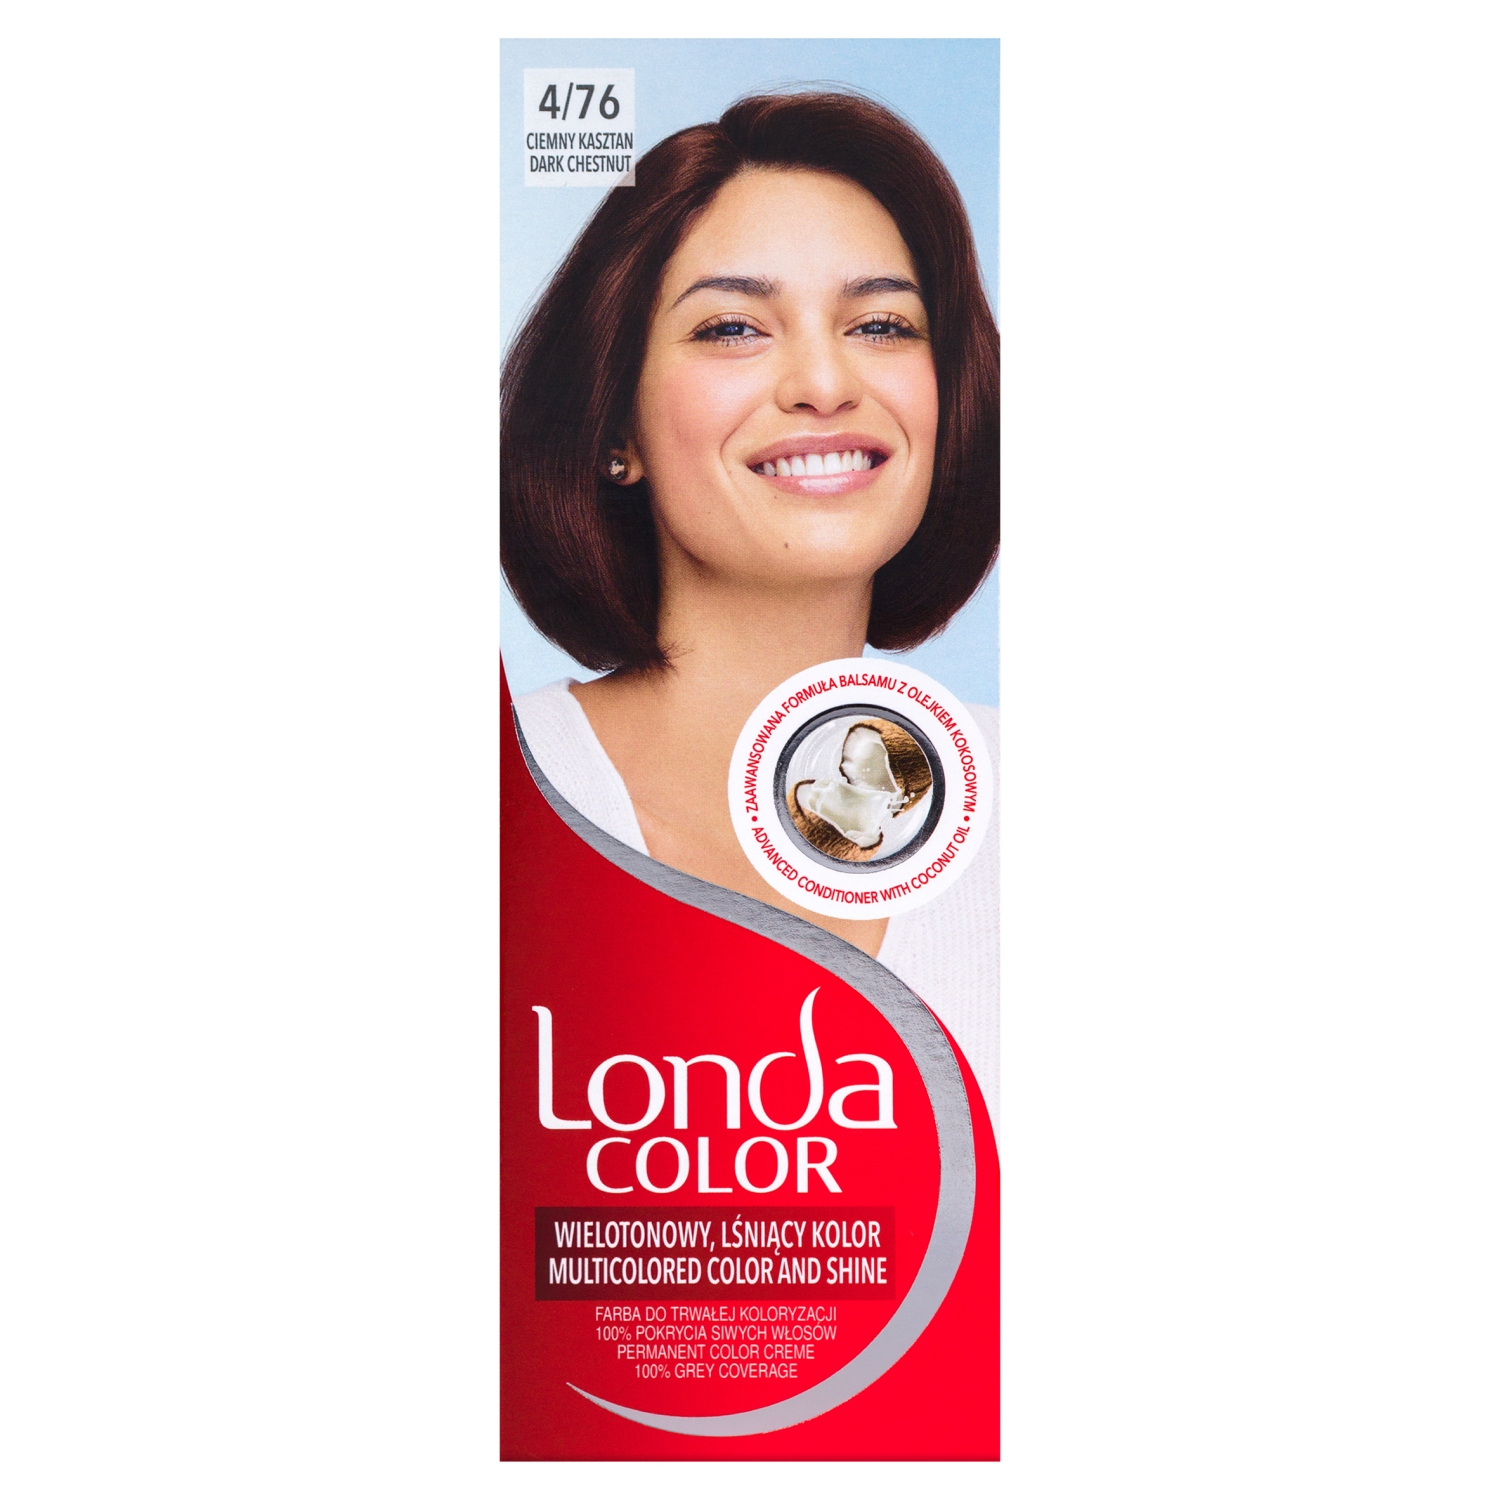 Крем-краска для волос 4/76 темно-каштановый Londa Color, 1 упаковка londa лонда стойкая крем краска 10 16